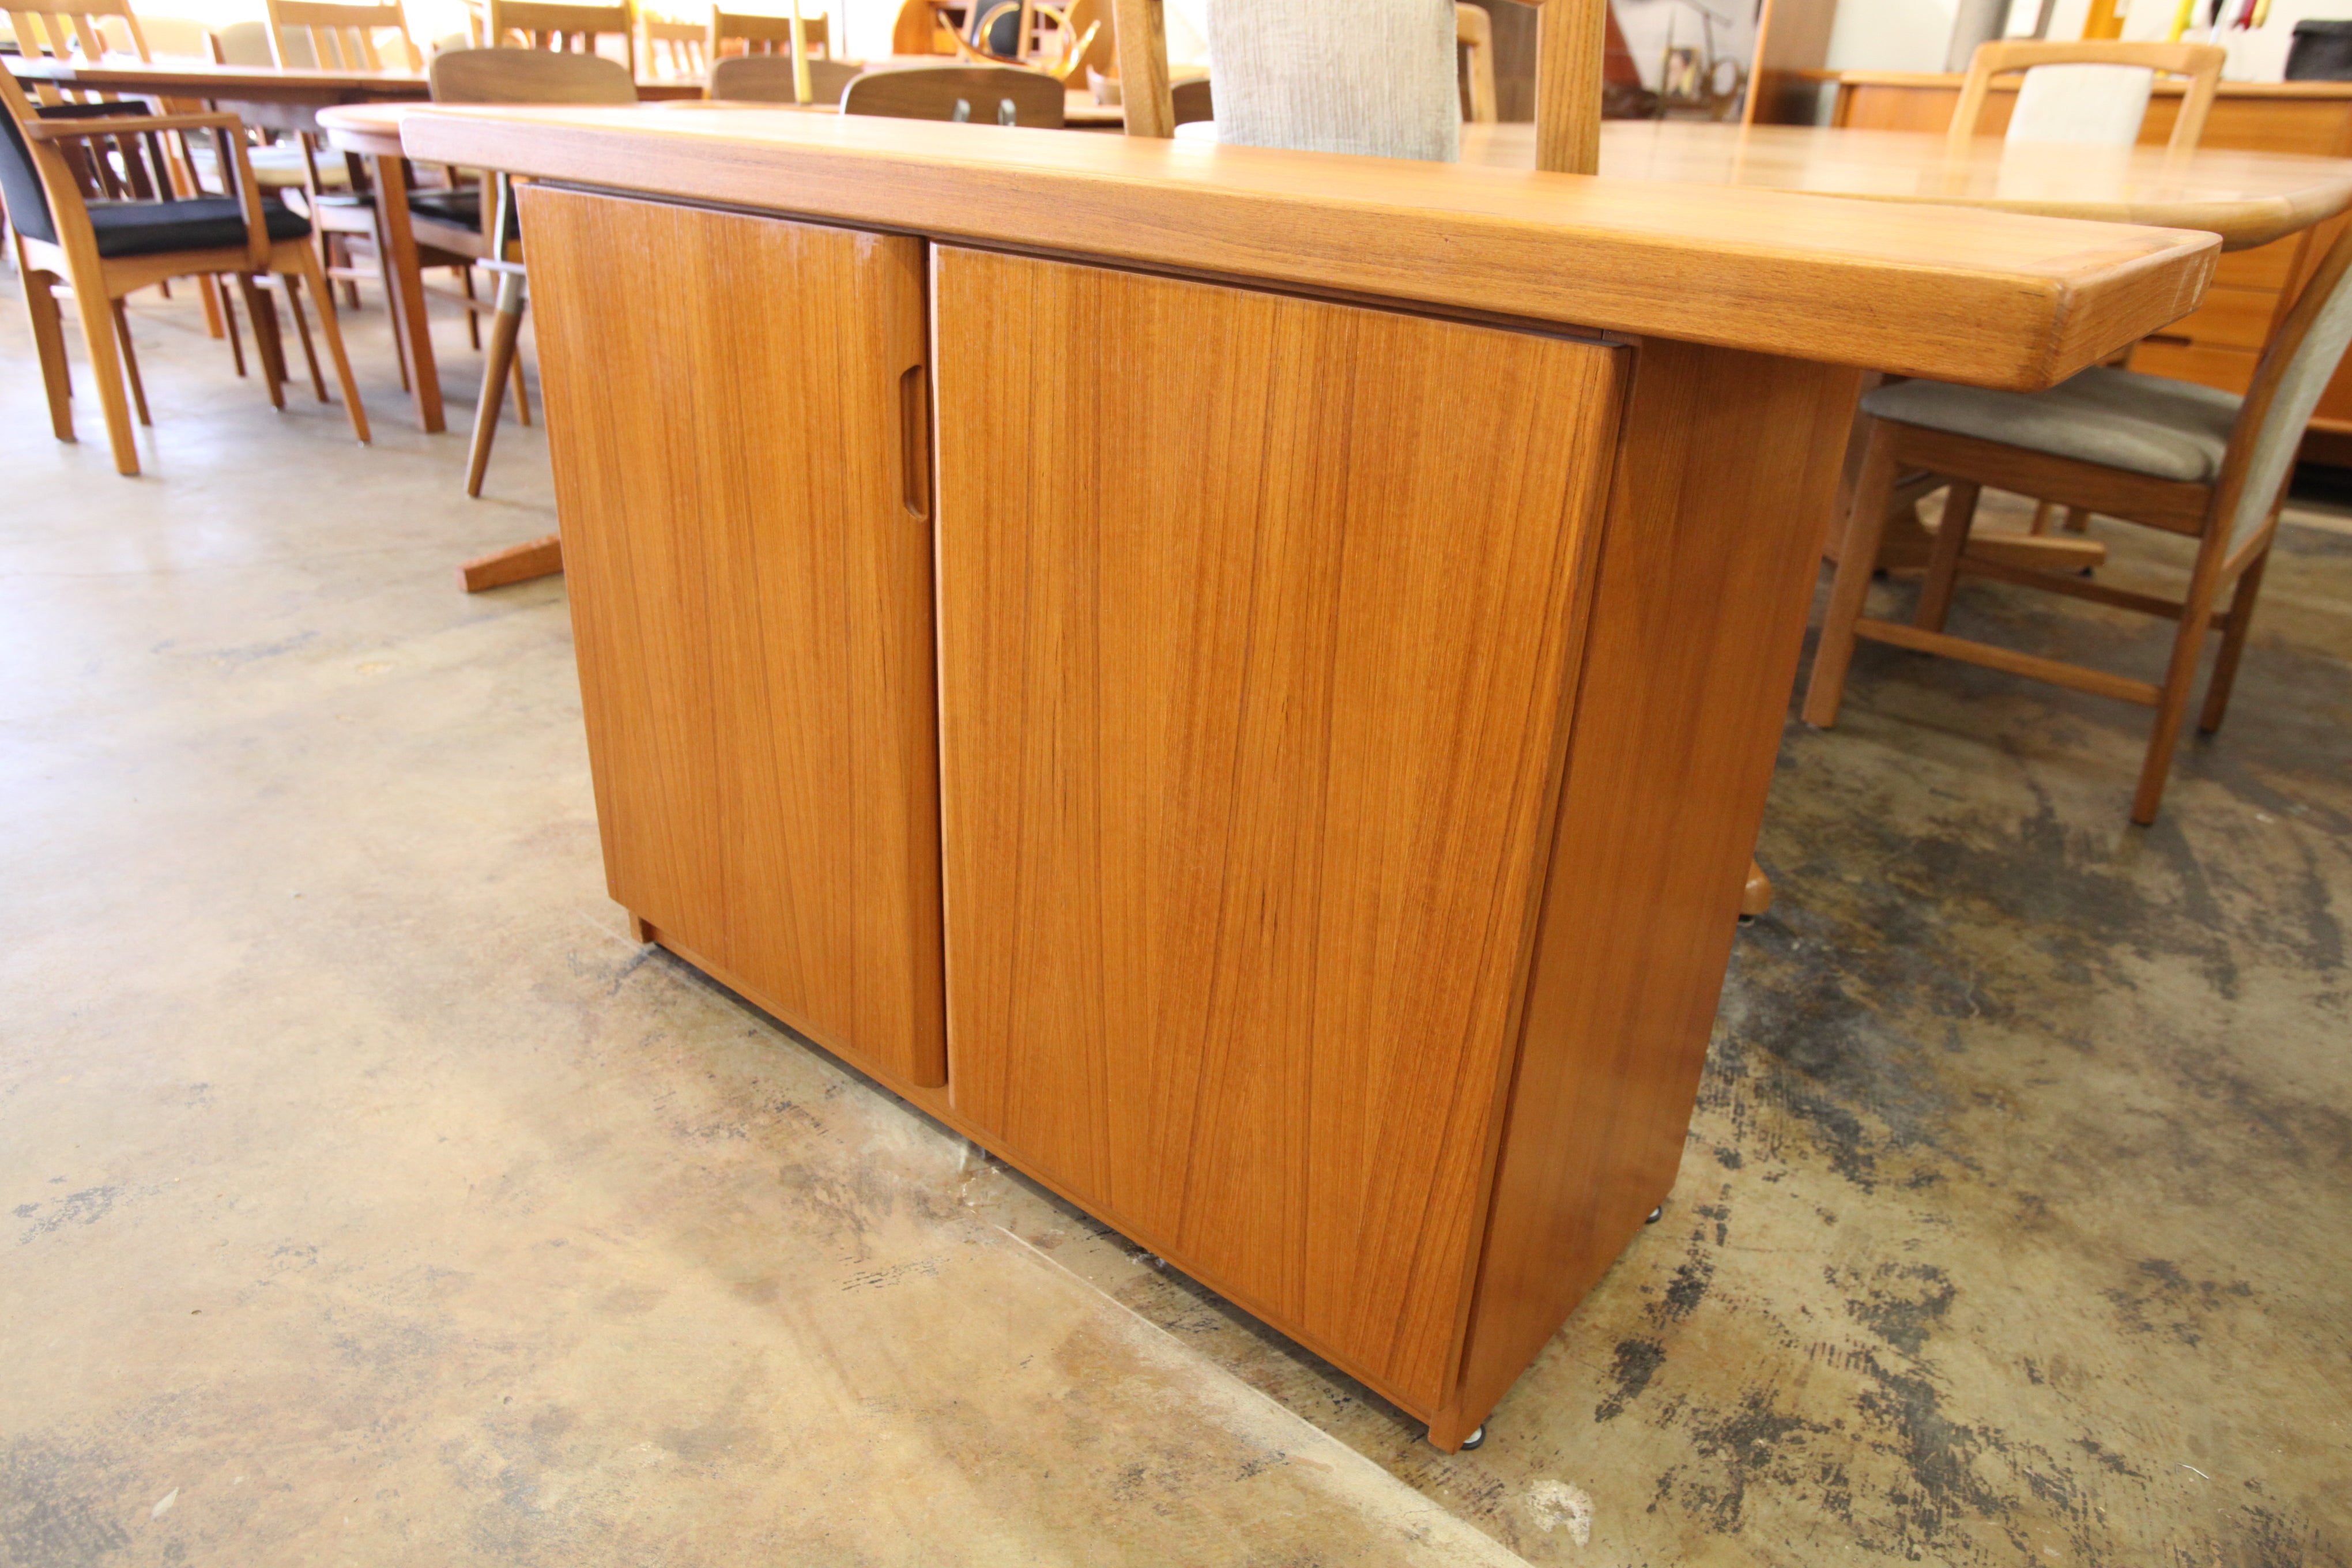 Vintage Teak Cabinet / Console Table (50"W x 15"D x 30"H)